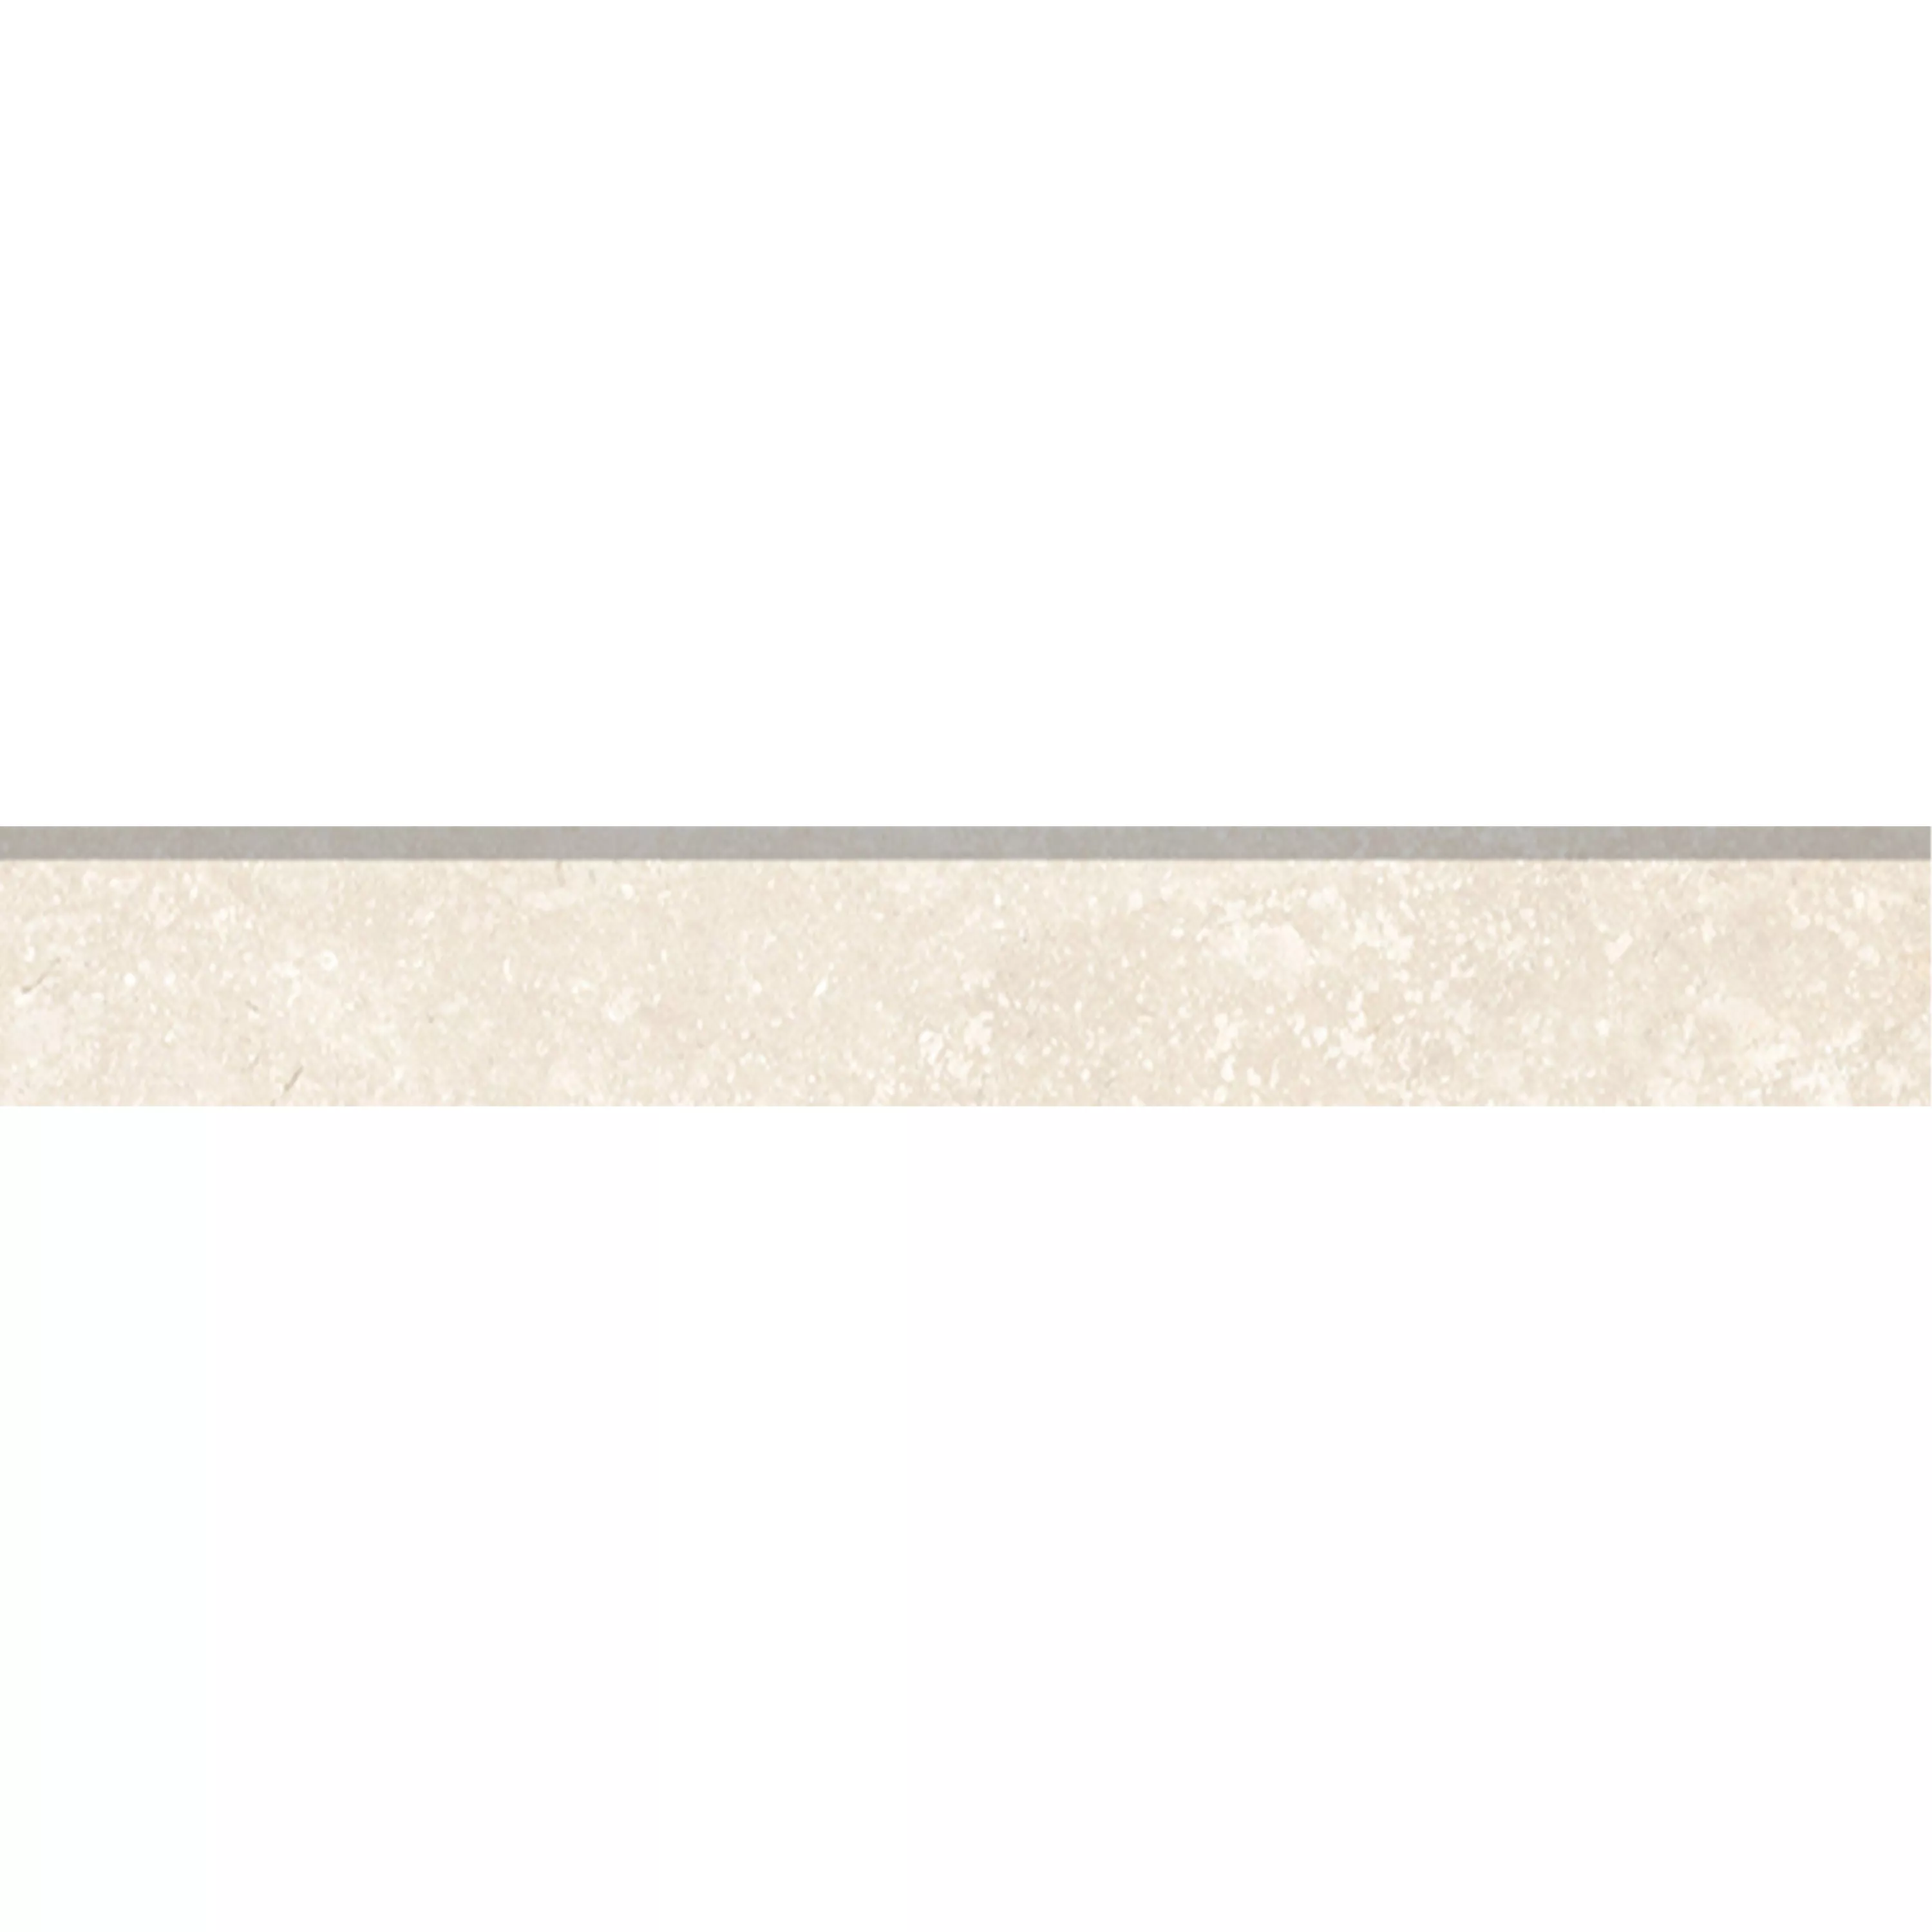 Πλακάκια Δαπέδου Pangea Μαρμάρινη Όψη Παγωμένος Cream Bάση 7x60cm